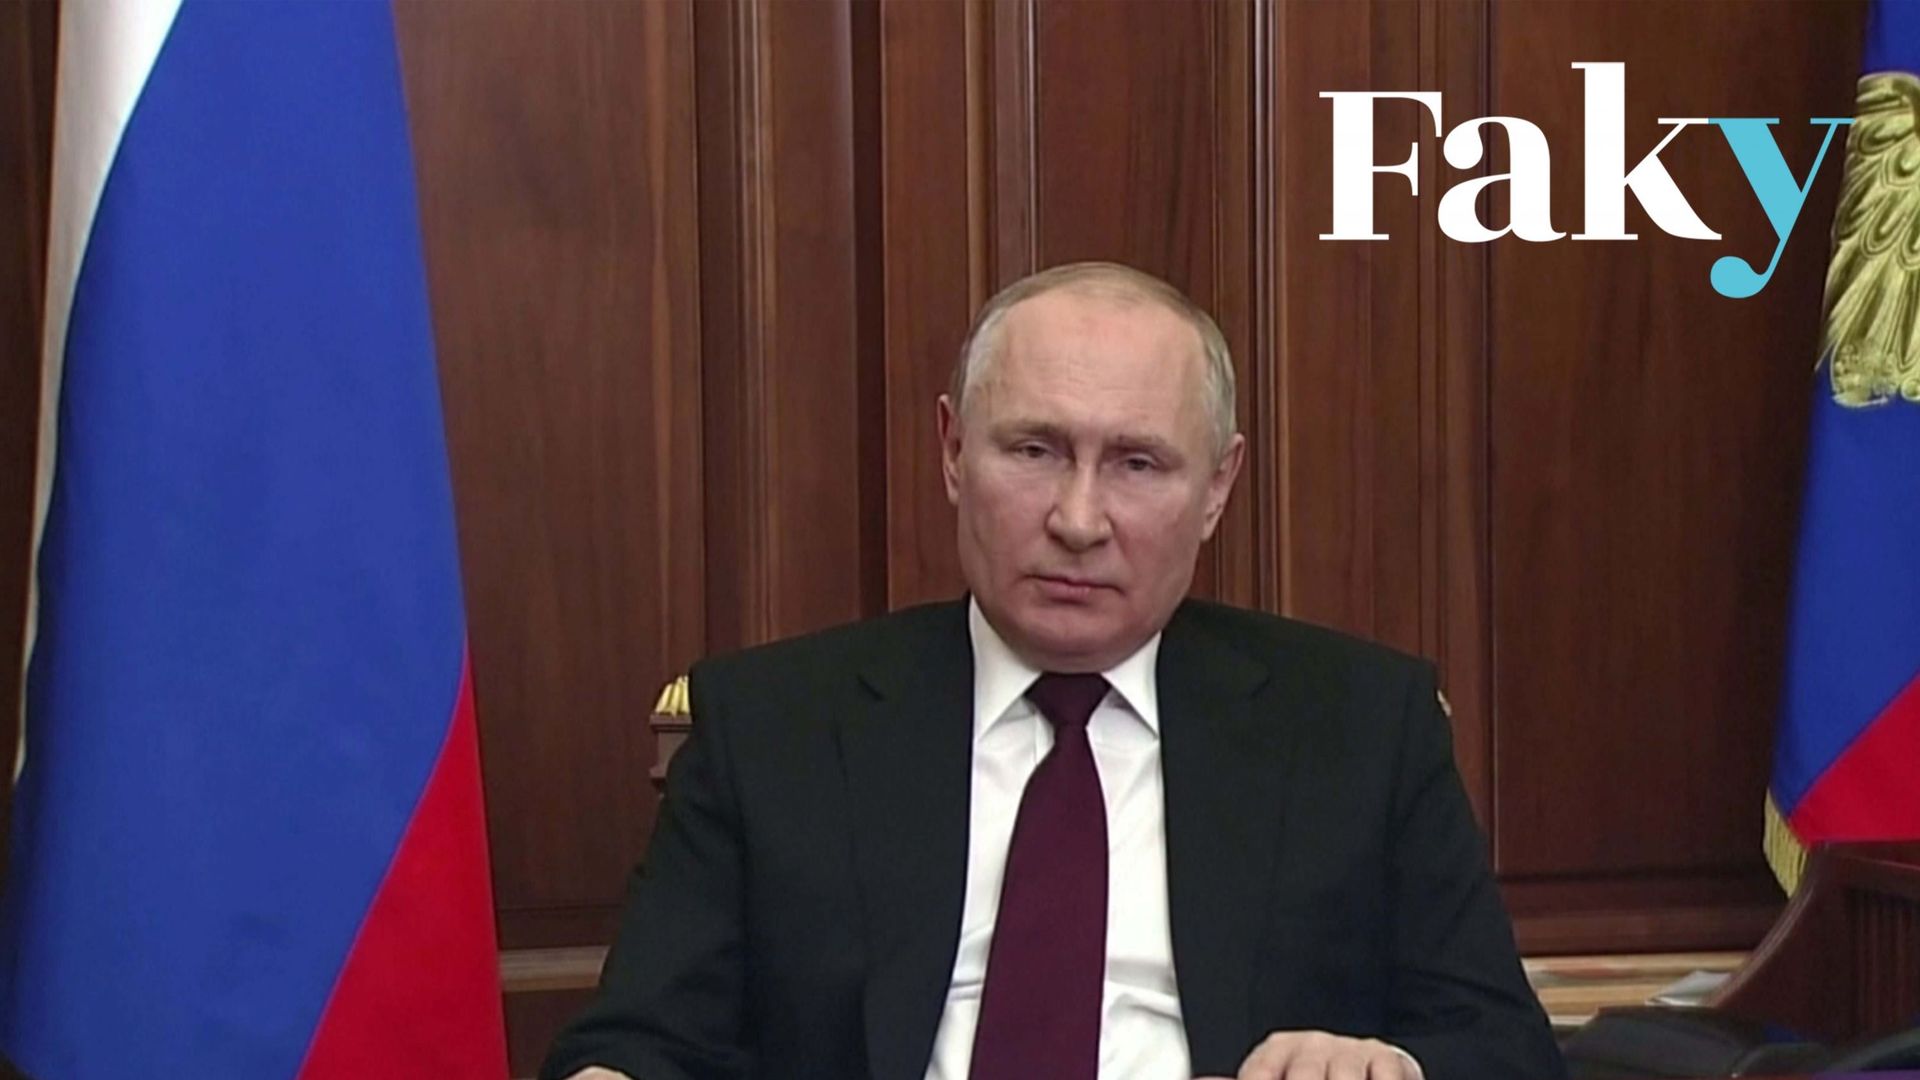 Non, les métadonnées de la vidéo du discours de Poutine ne prouvent pas qu’il a été enregistré deux jours avant